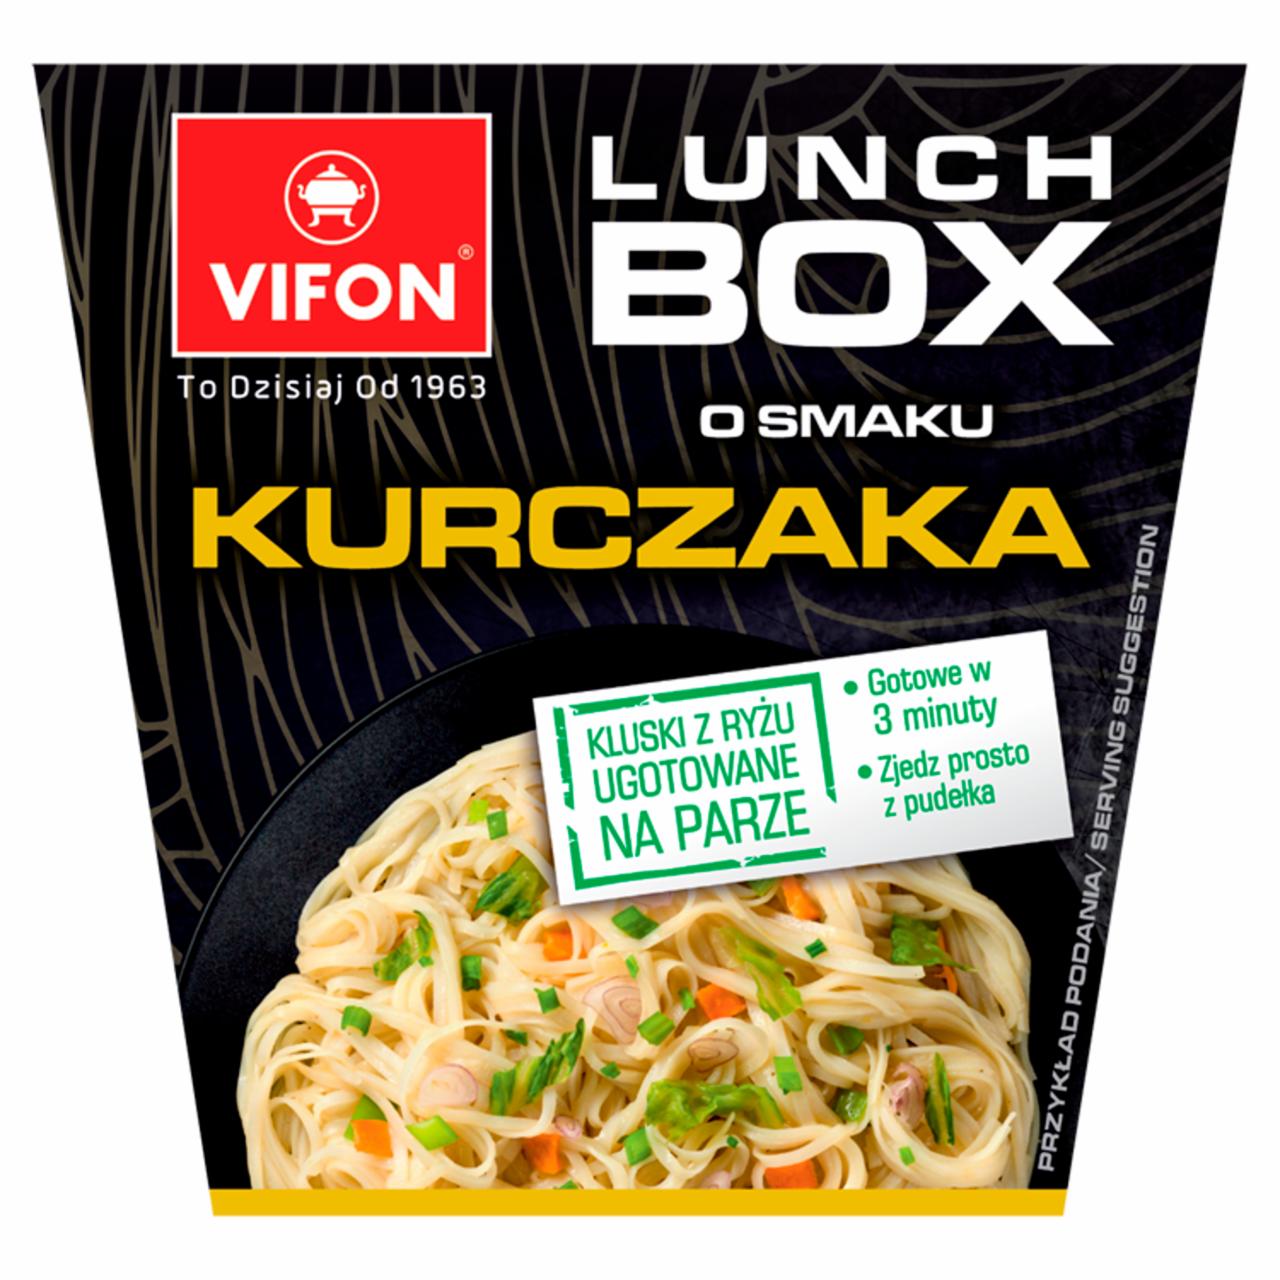 Zdjęcia - Vifon Lunch Box Danie błyskawiczne o smaku kurczaka 85 g